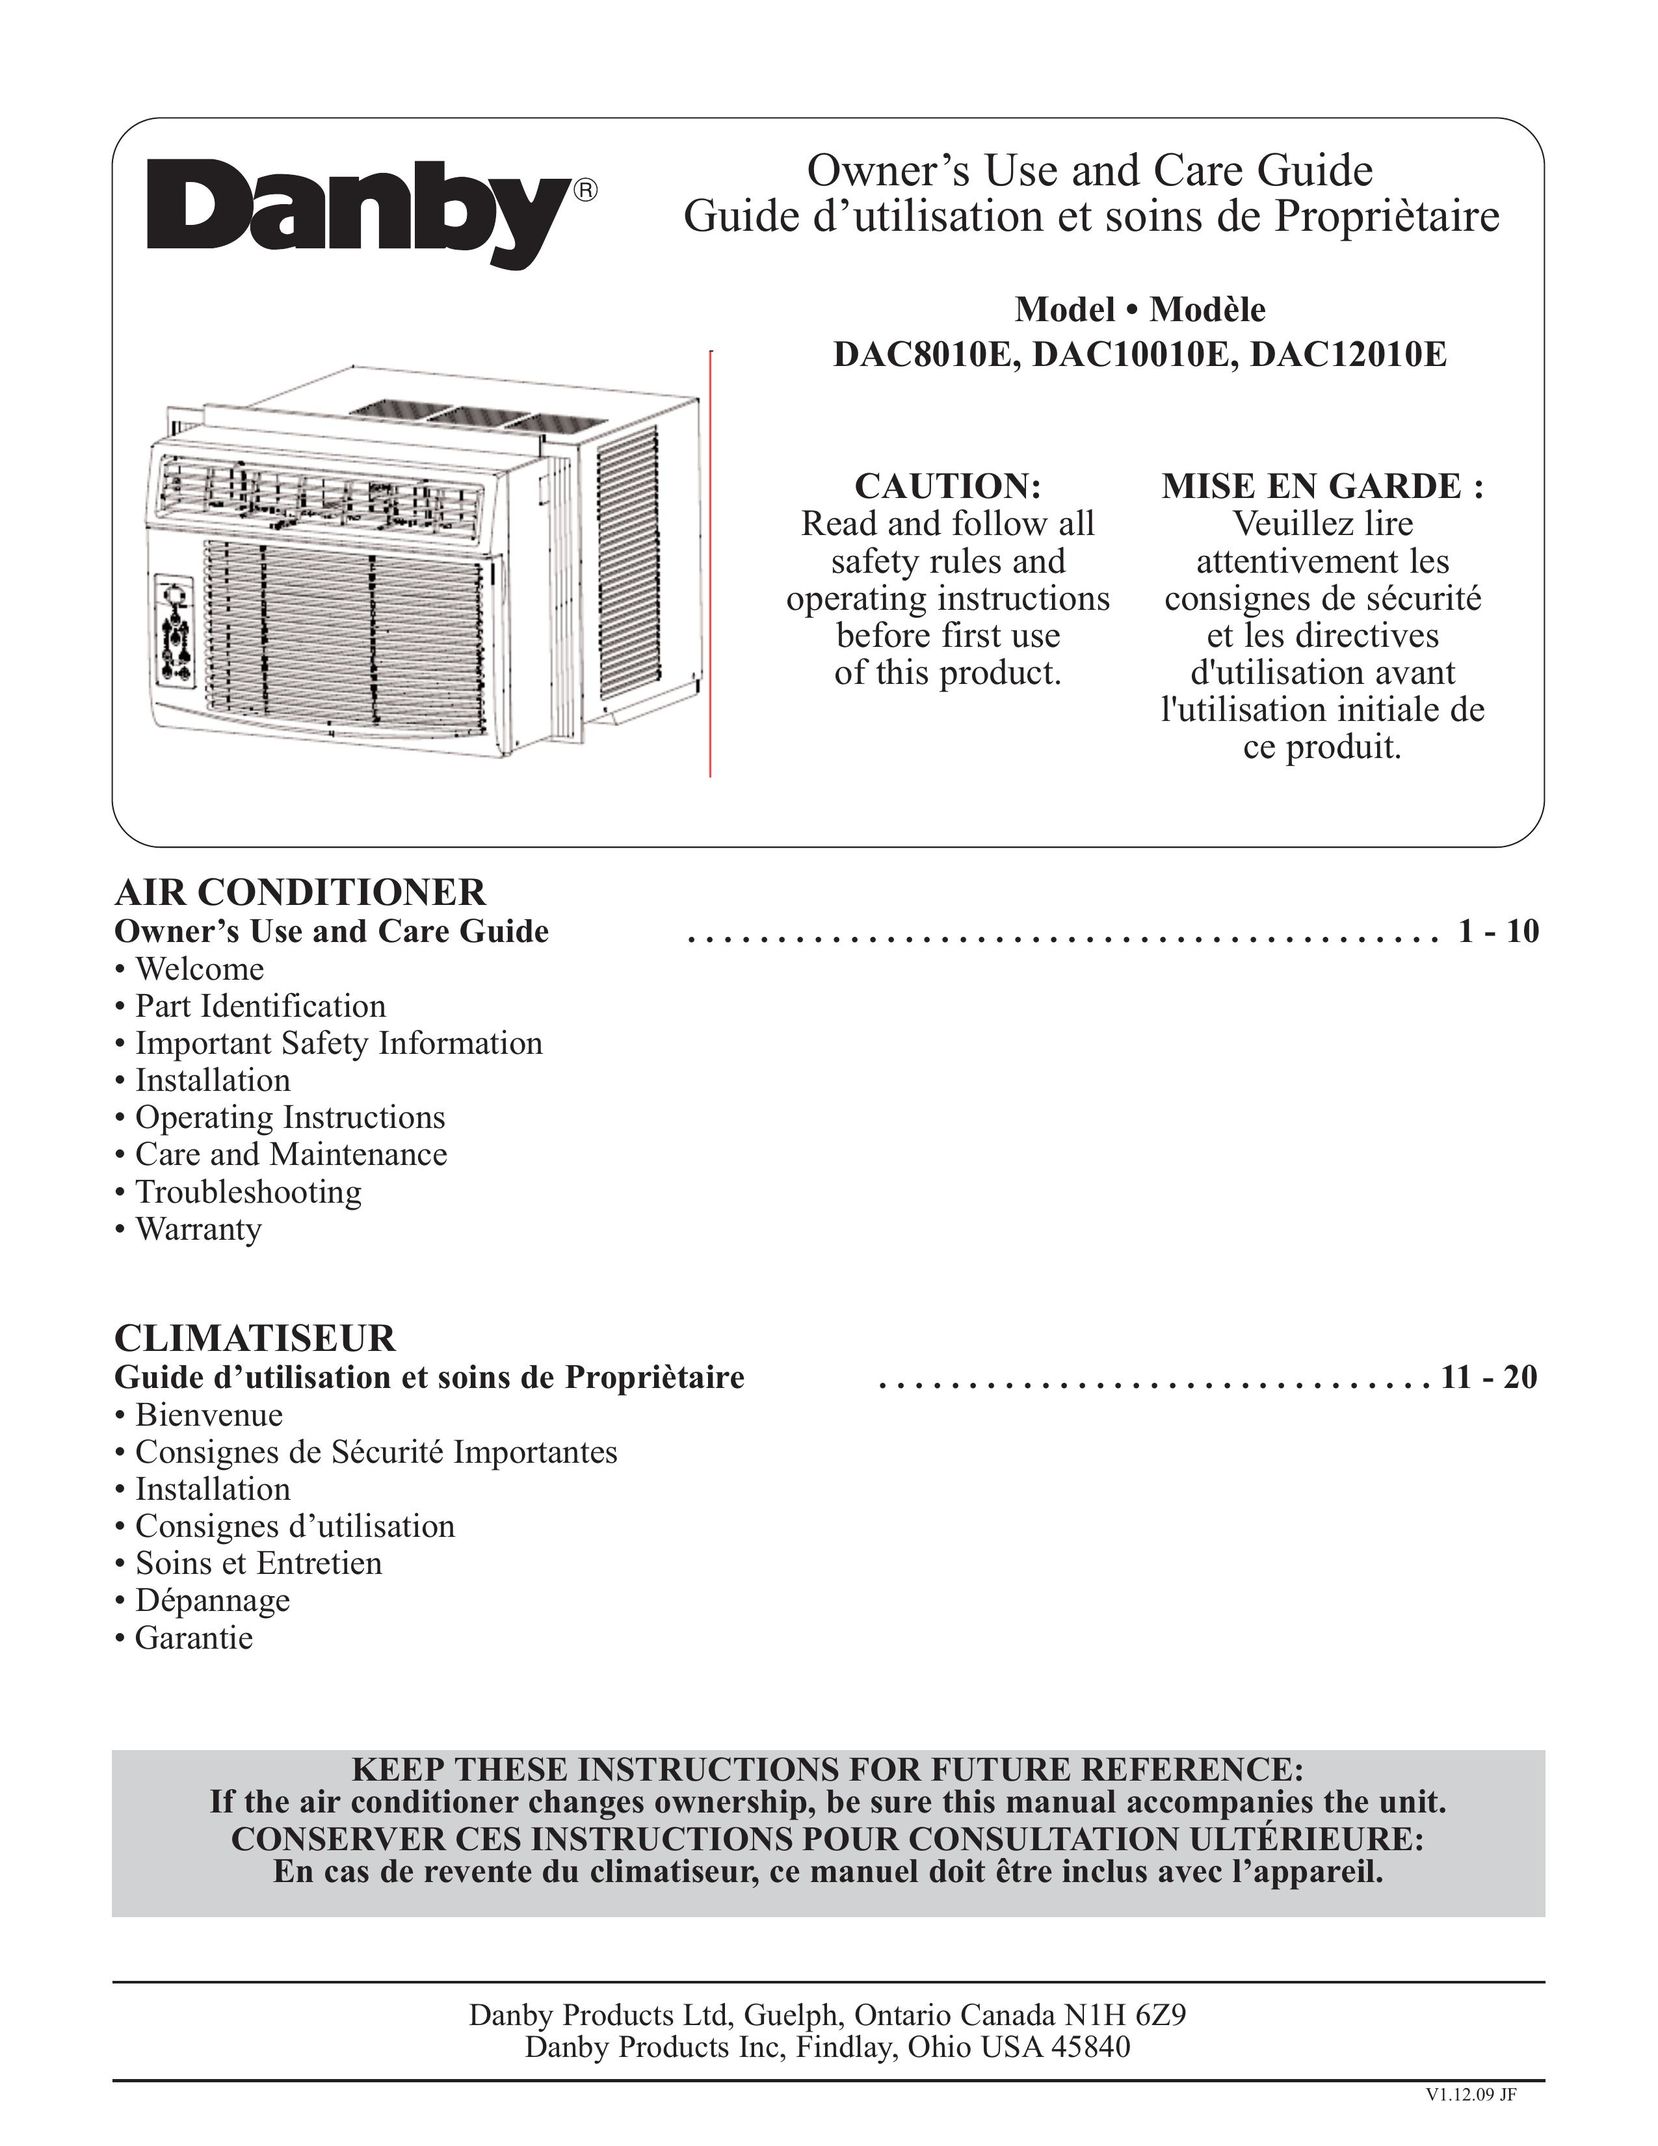 Danby DAC10010E Air Conditioner User Manual